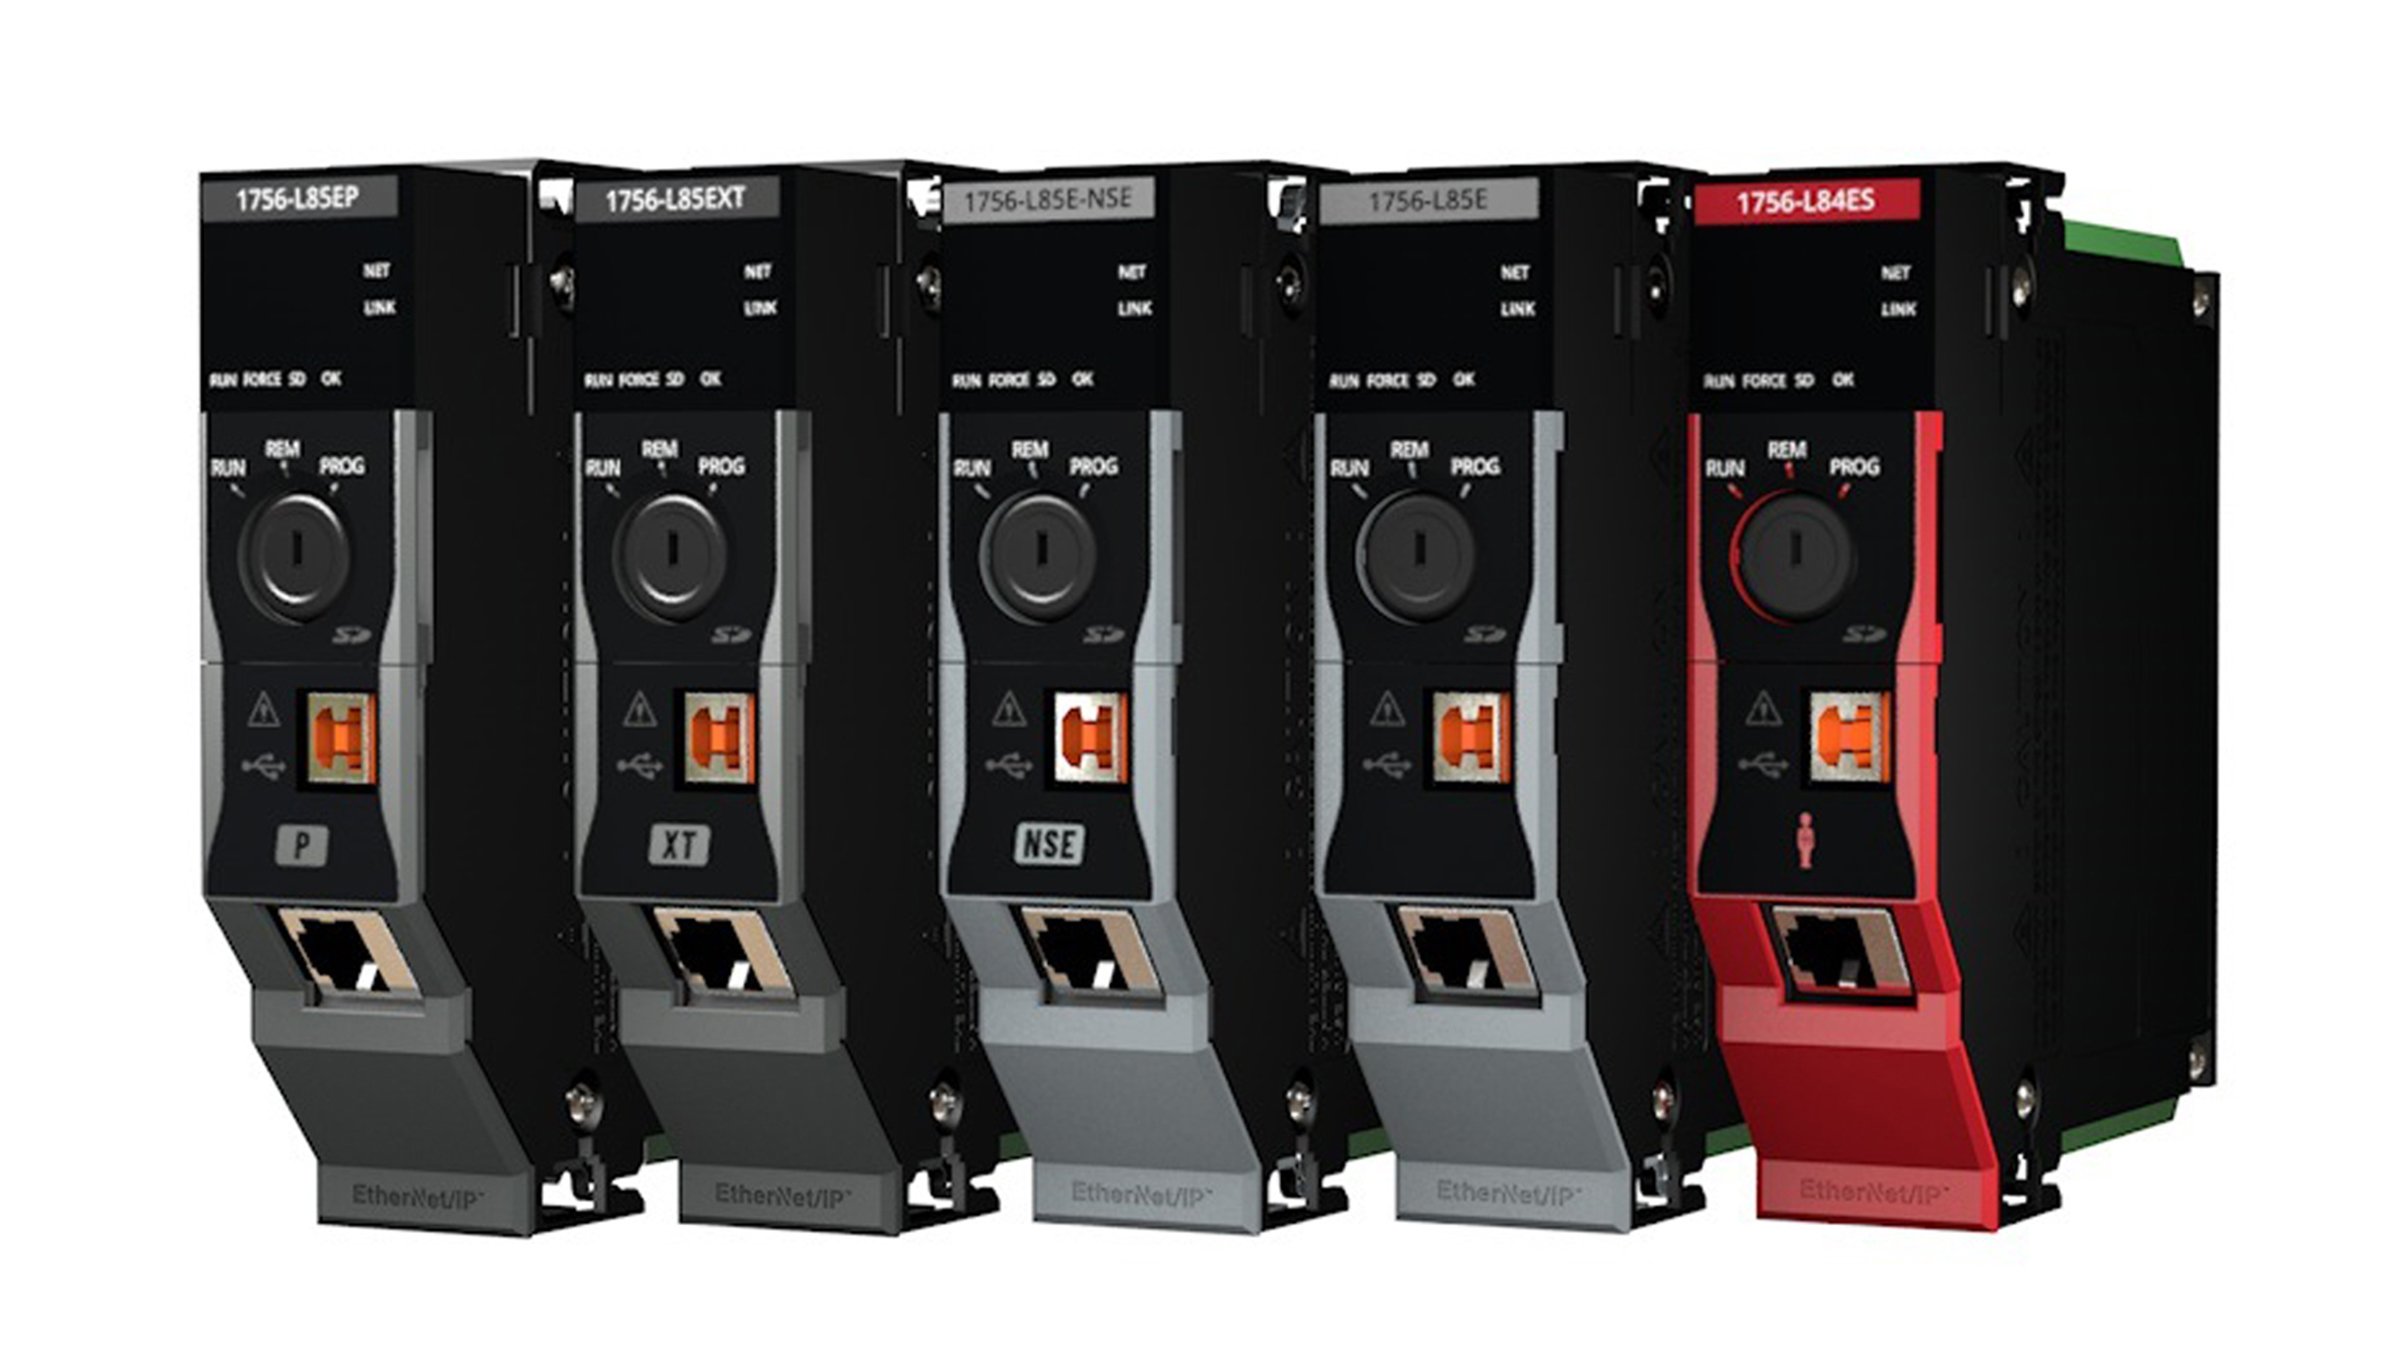 Cinco controladores de seguridad de la gama CompactLogix y GuardLogix 5580 